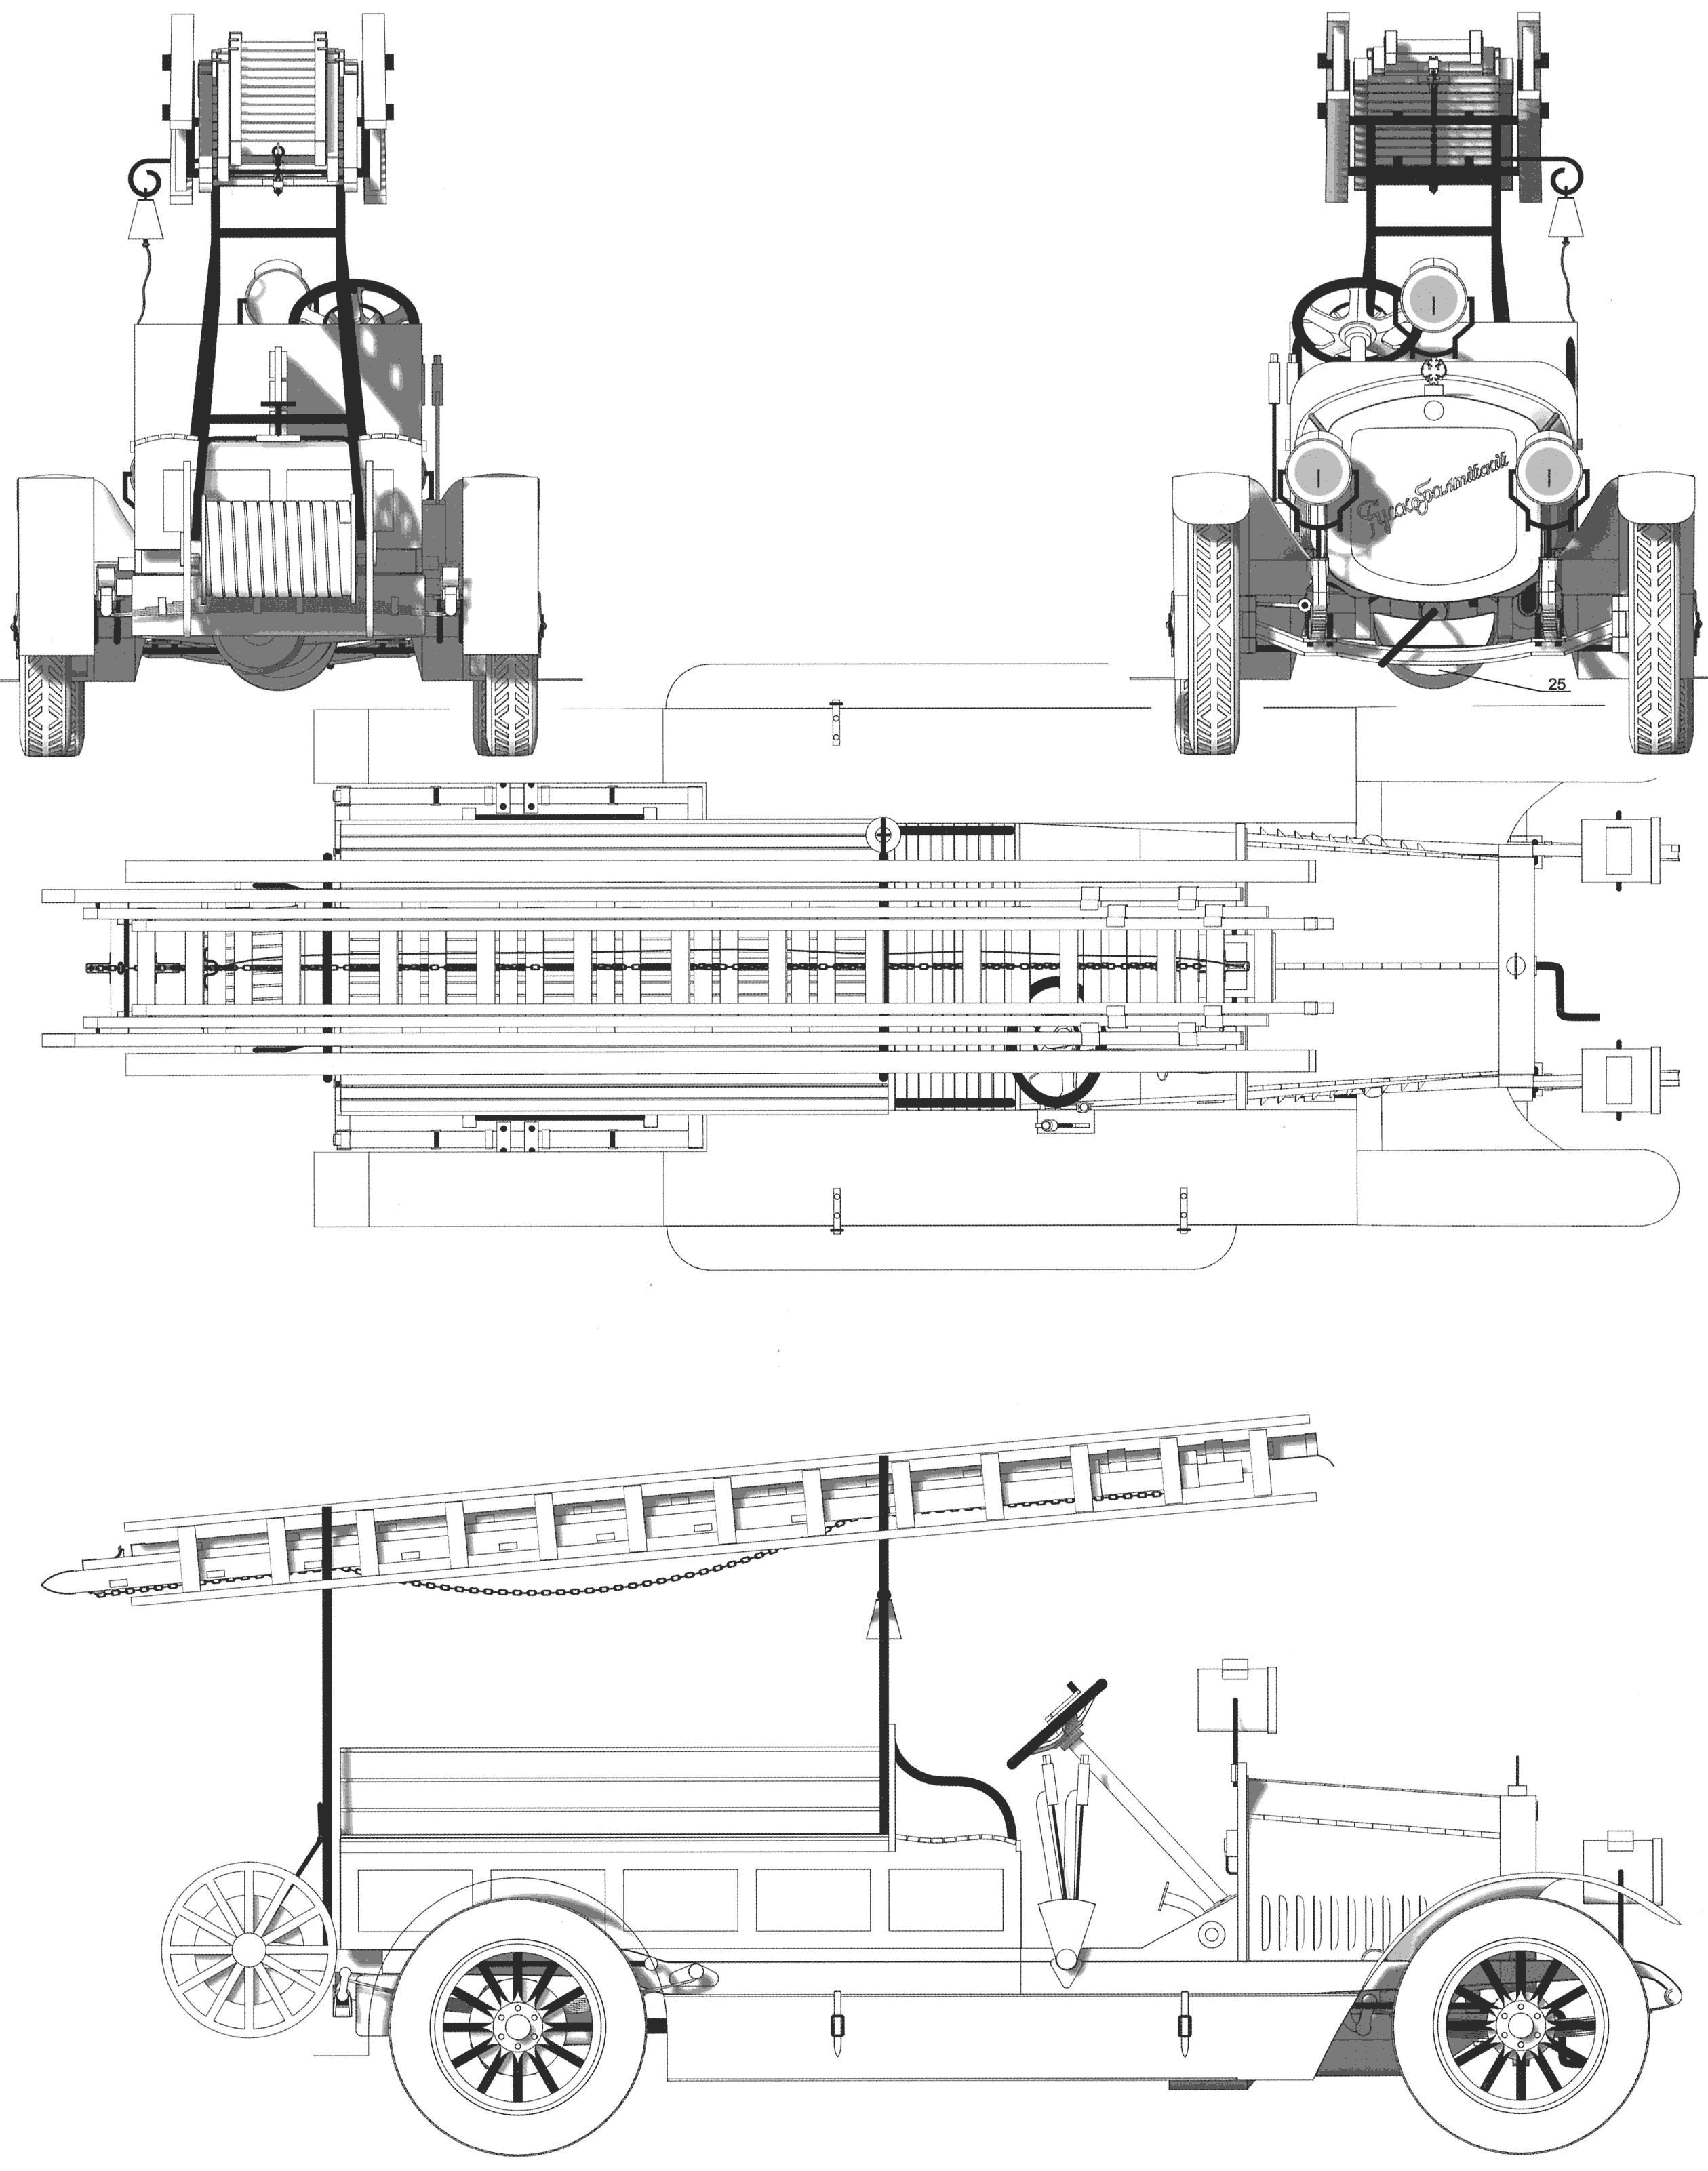 Russo-Balt model D 24/40 fire engine blueprint